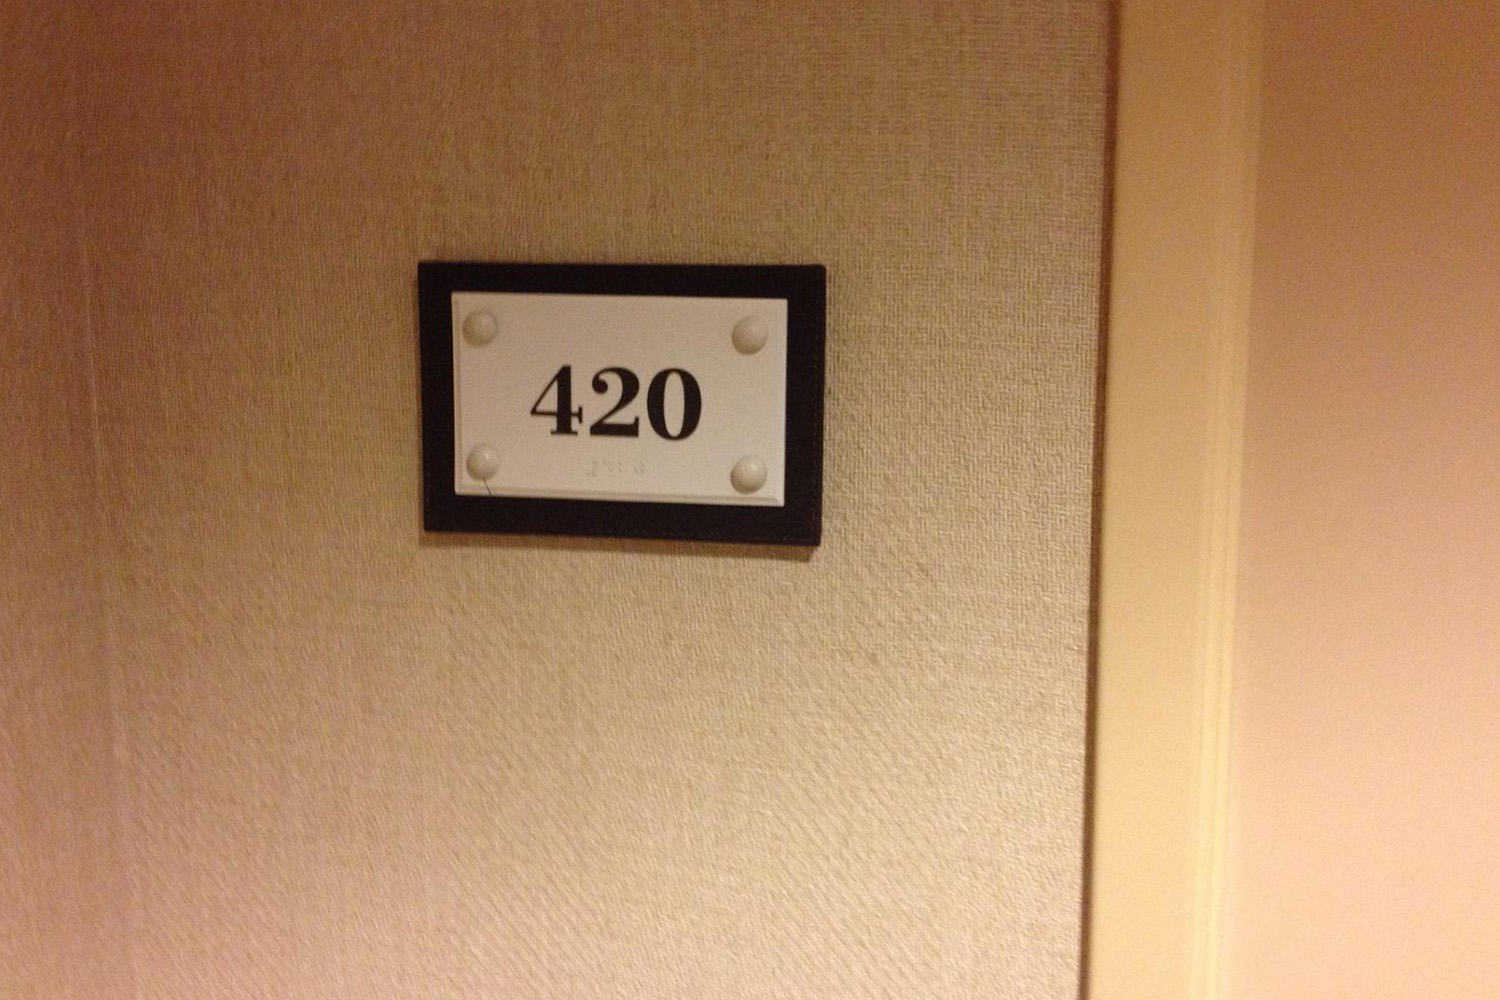 ¿Por qué los hoteles se rehúsan a tener habitaciones con el número 420?